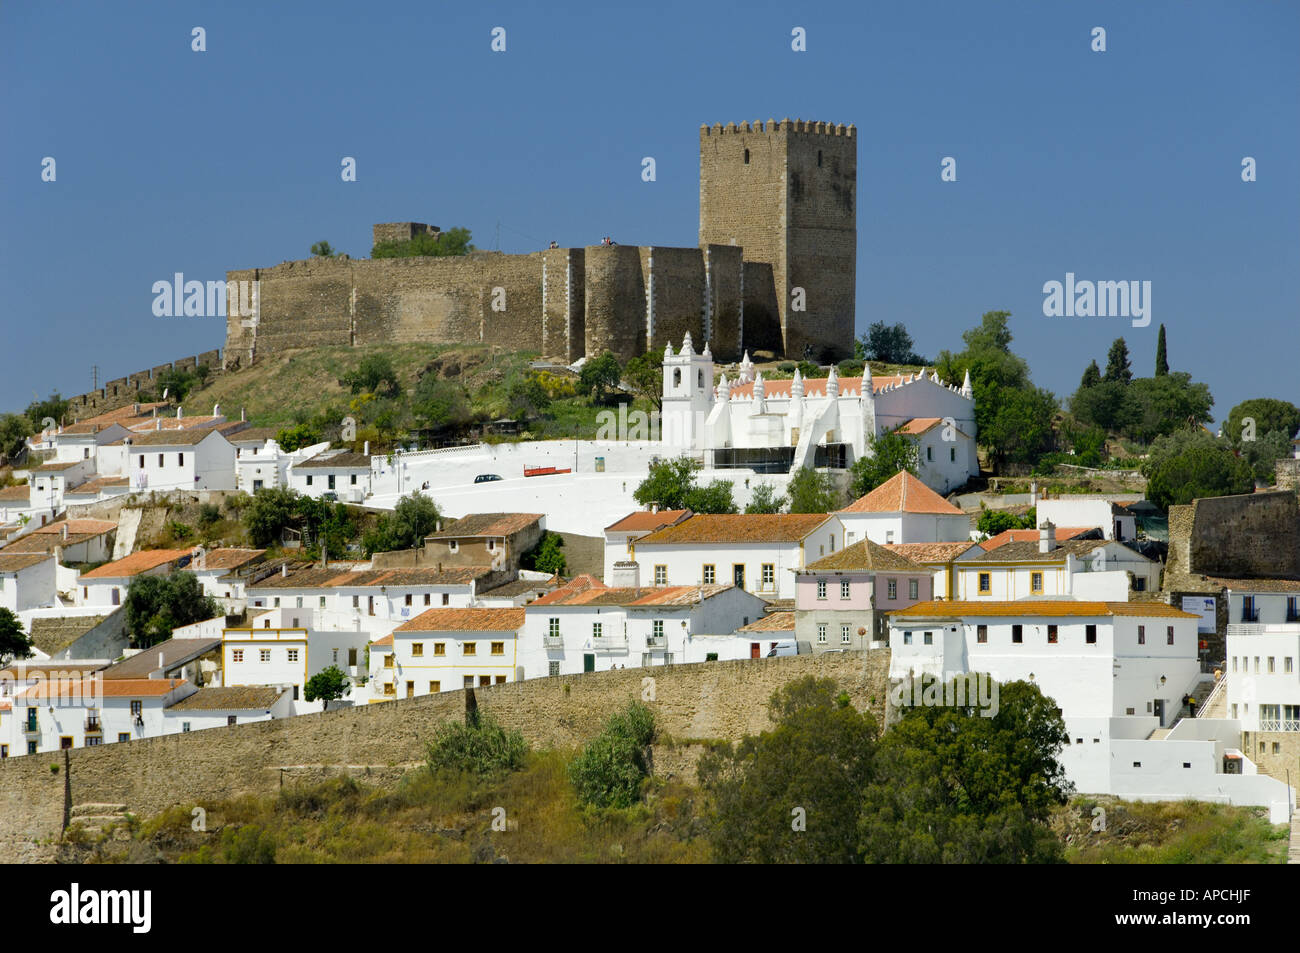 Le Portugal, l'Alentejo, Mertola, vue de ville médiévale, château et Église Banque D'Images